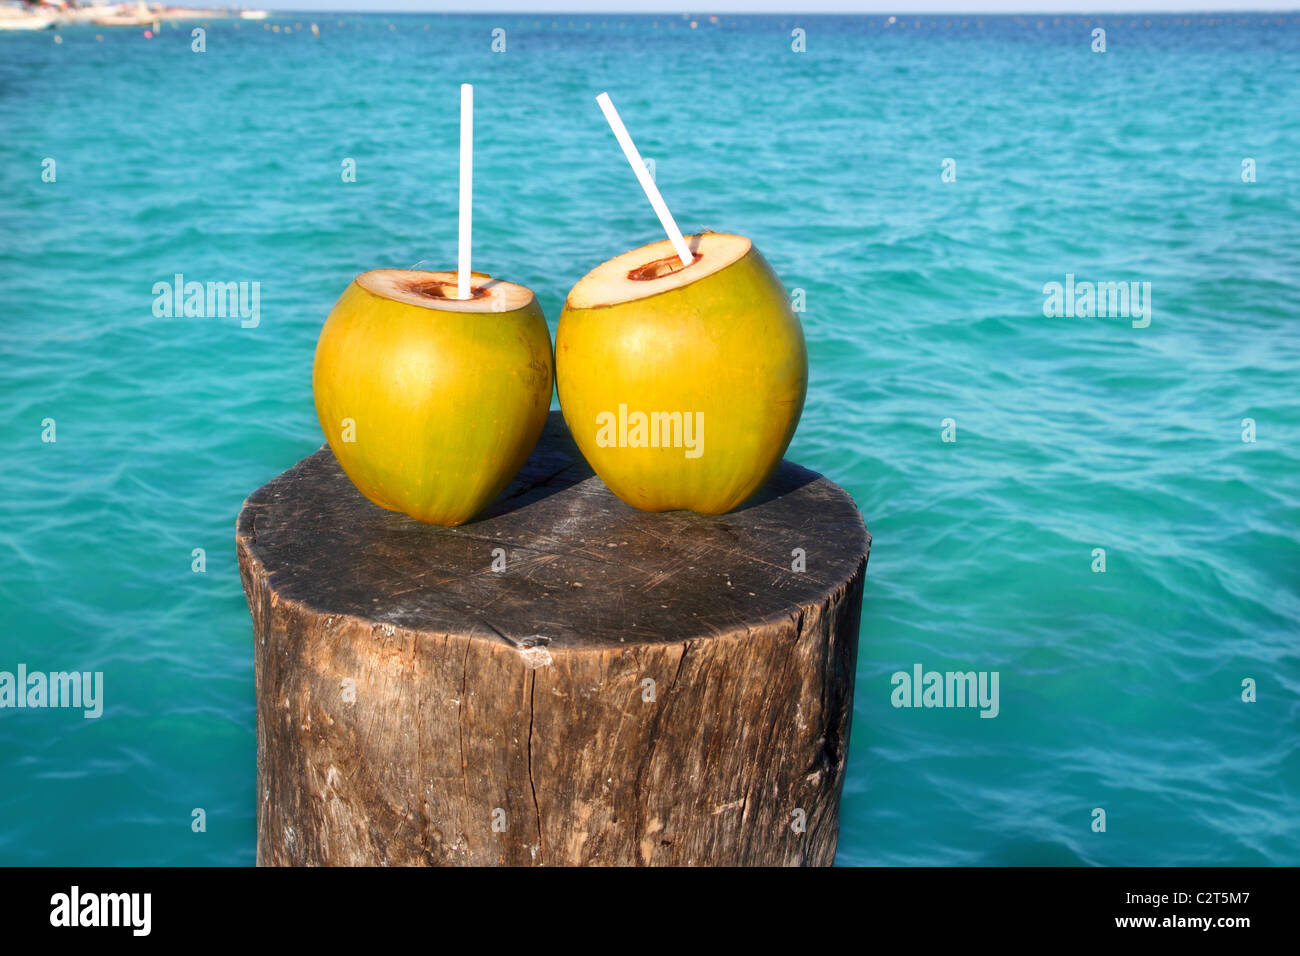 zwei frische Kokosnüsse Saft cocktail Wasser Strohhalme im karibischen Meer Stamm Stockfoto